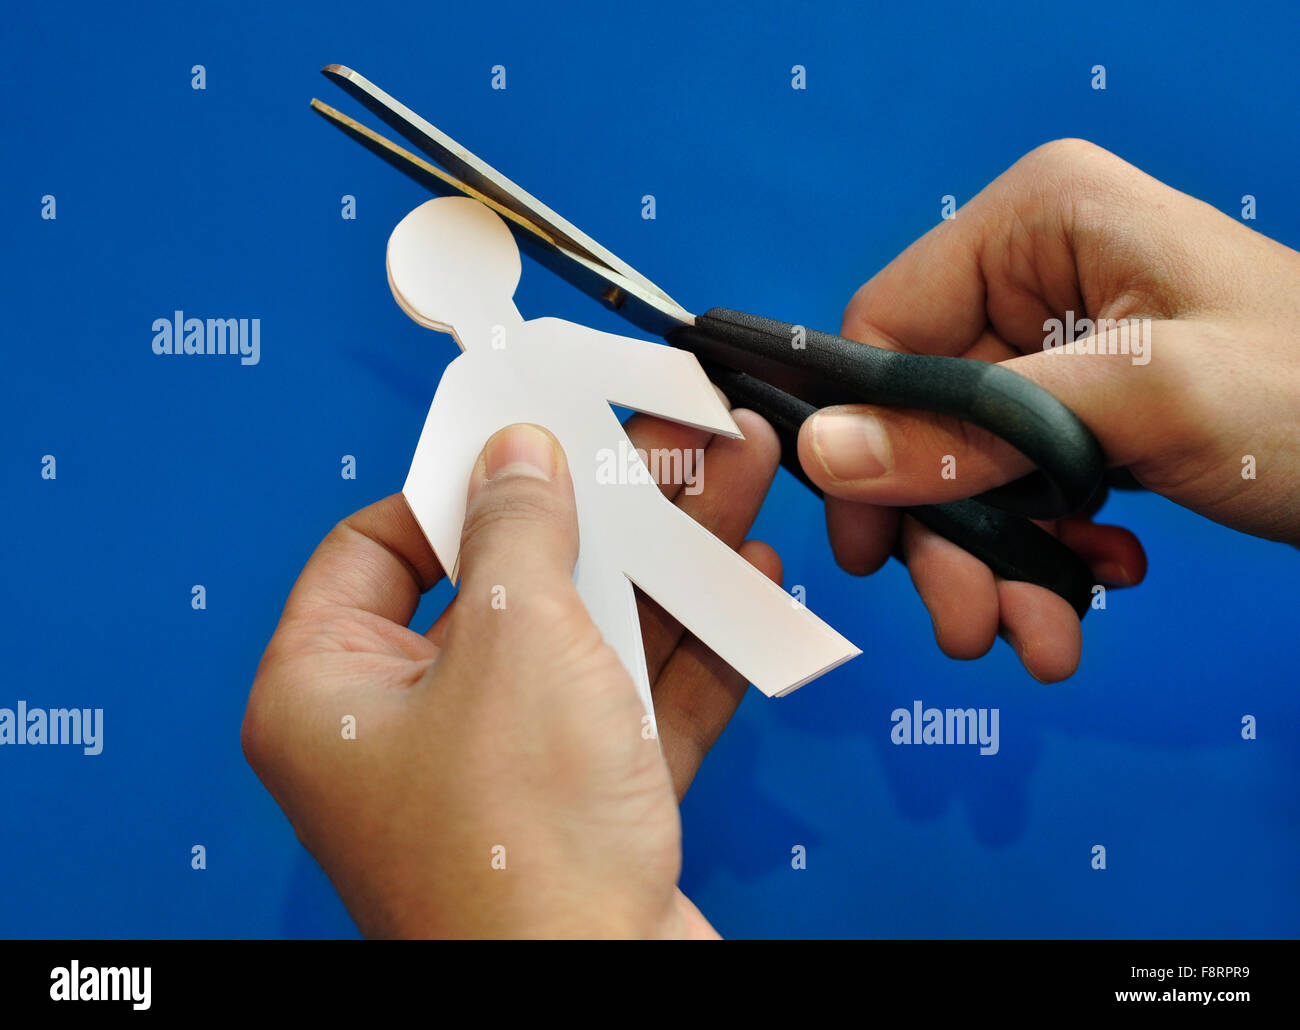 Corte de papel 'personas'. Fomentar el talento - un concepto. Primer plano de una mano con la tijera de corte de papel ilustración. Foto de stock